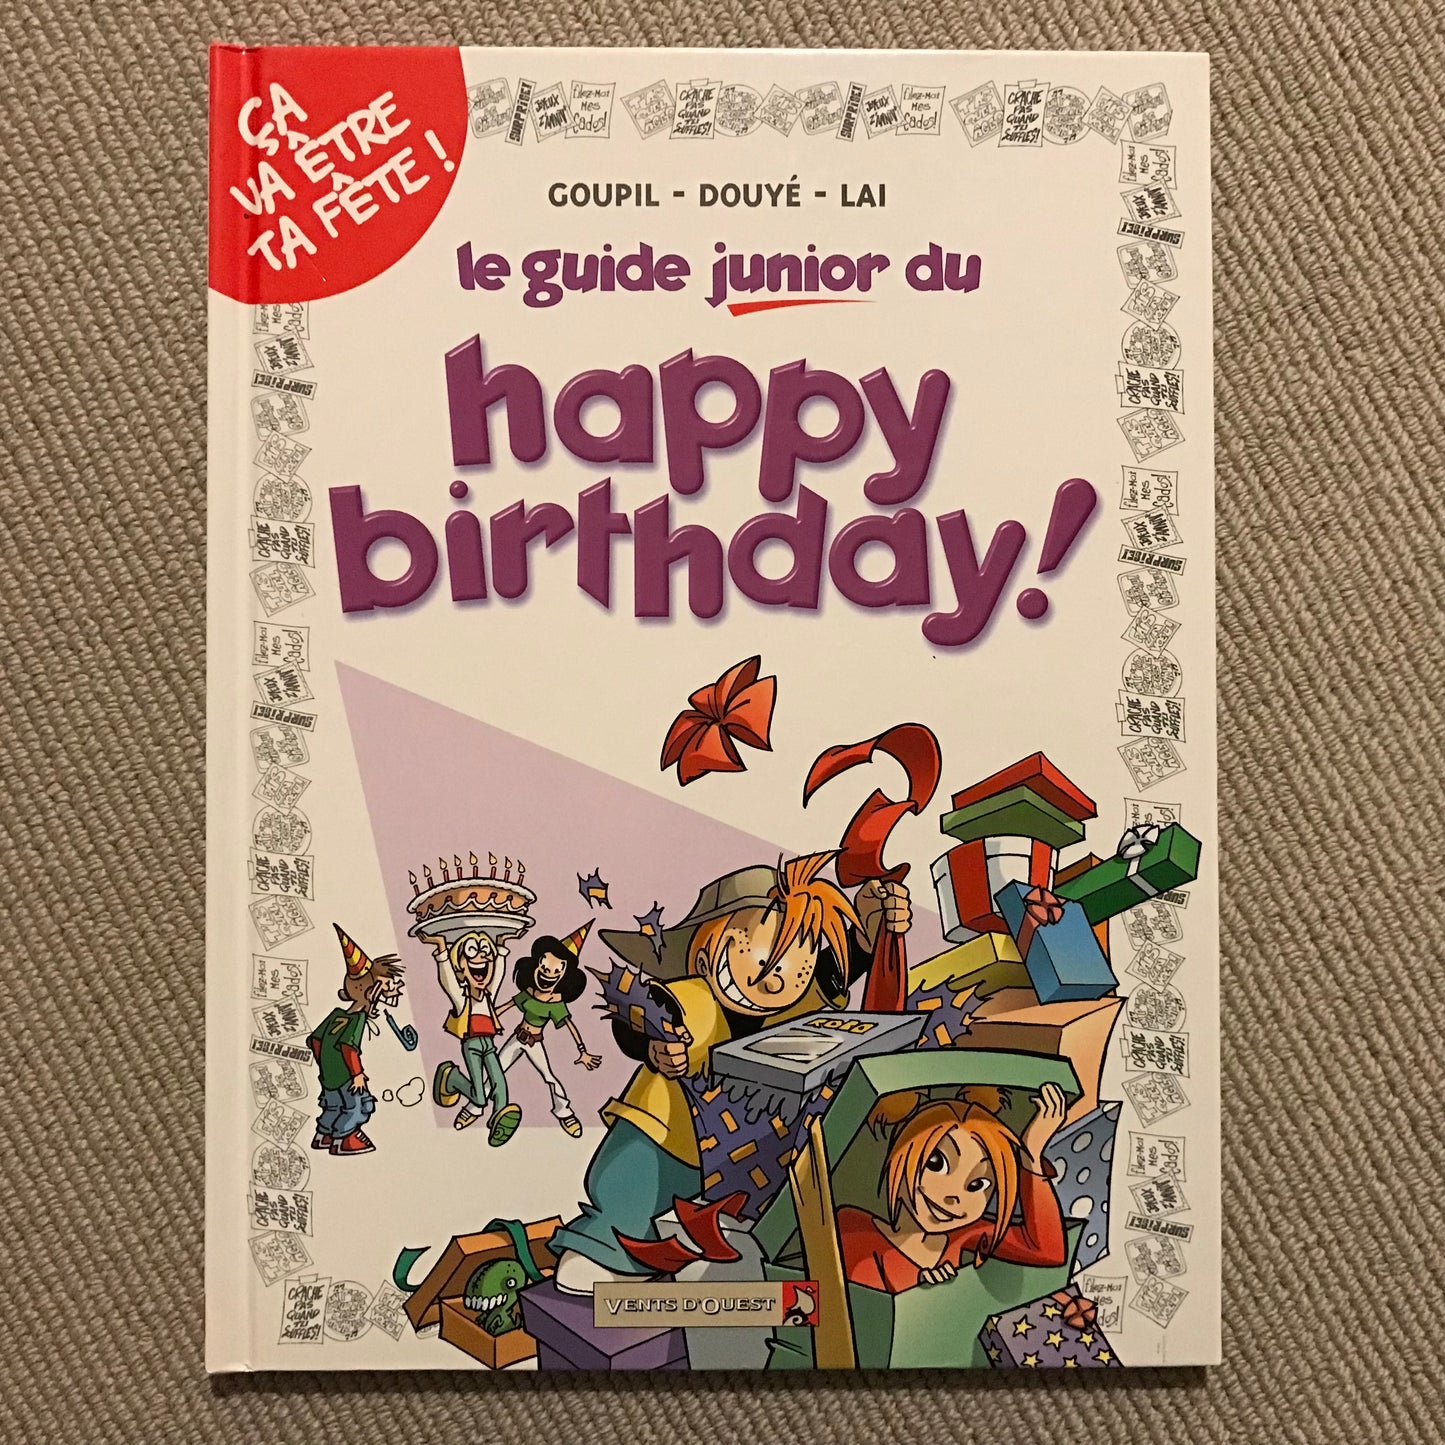 Le guide junior du happy birthday! - Goupil, Douyé & Lai